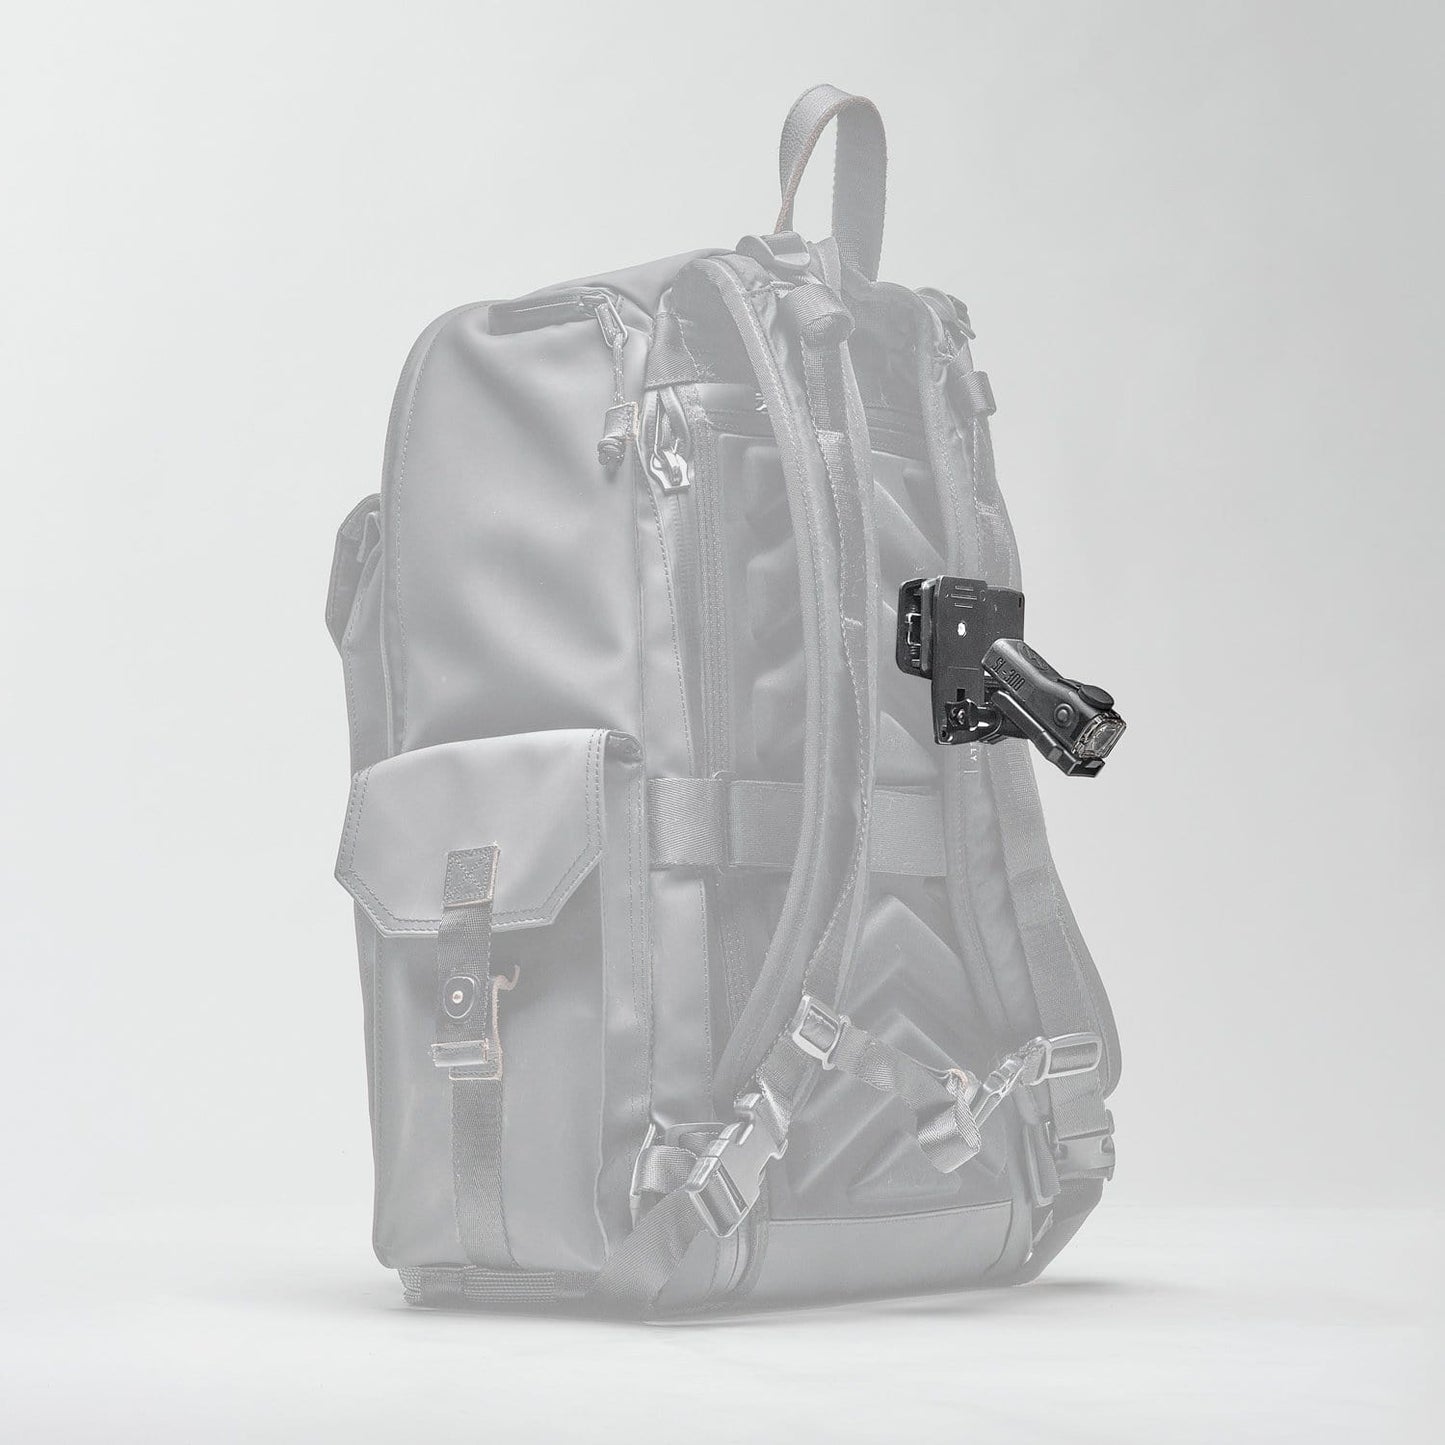 SL-300 Backpack Single Pack - REVRides